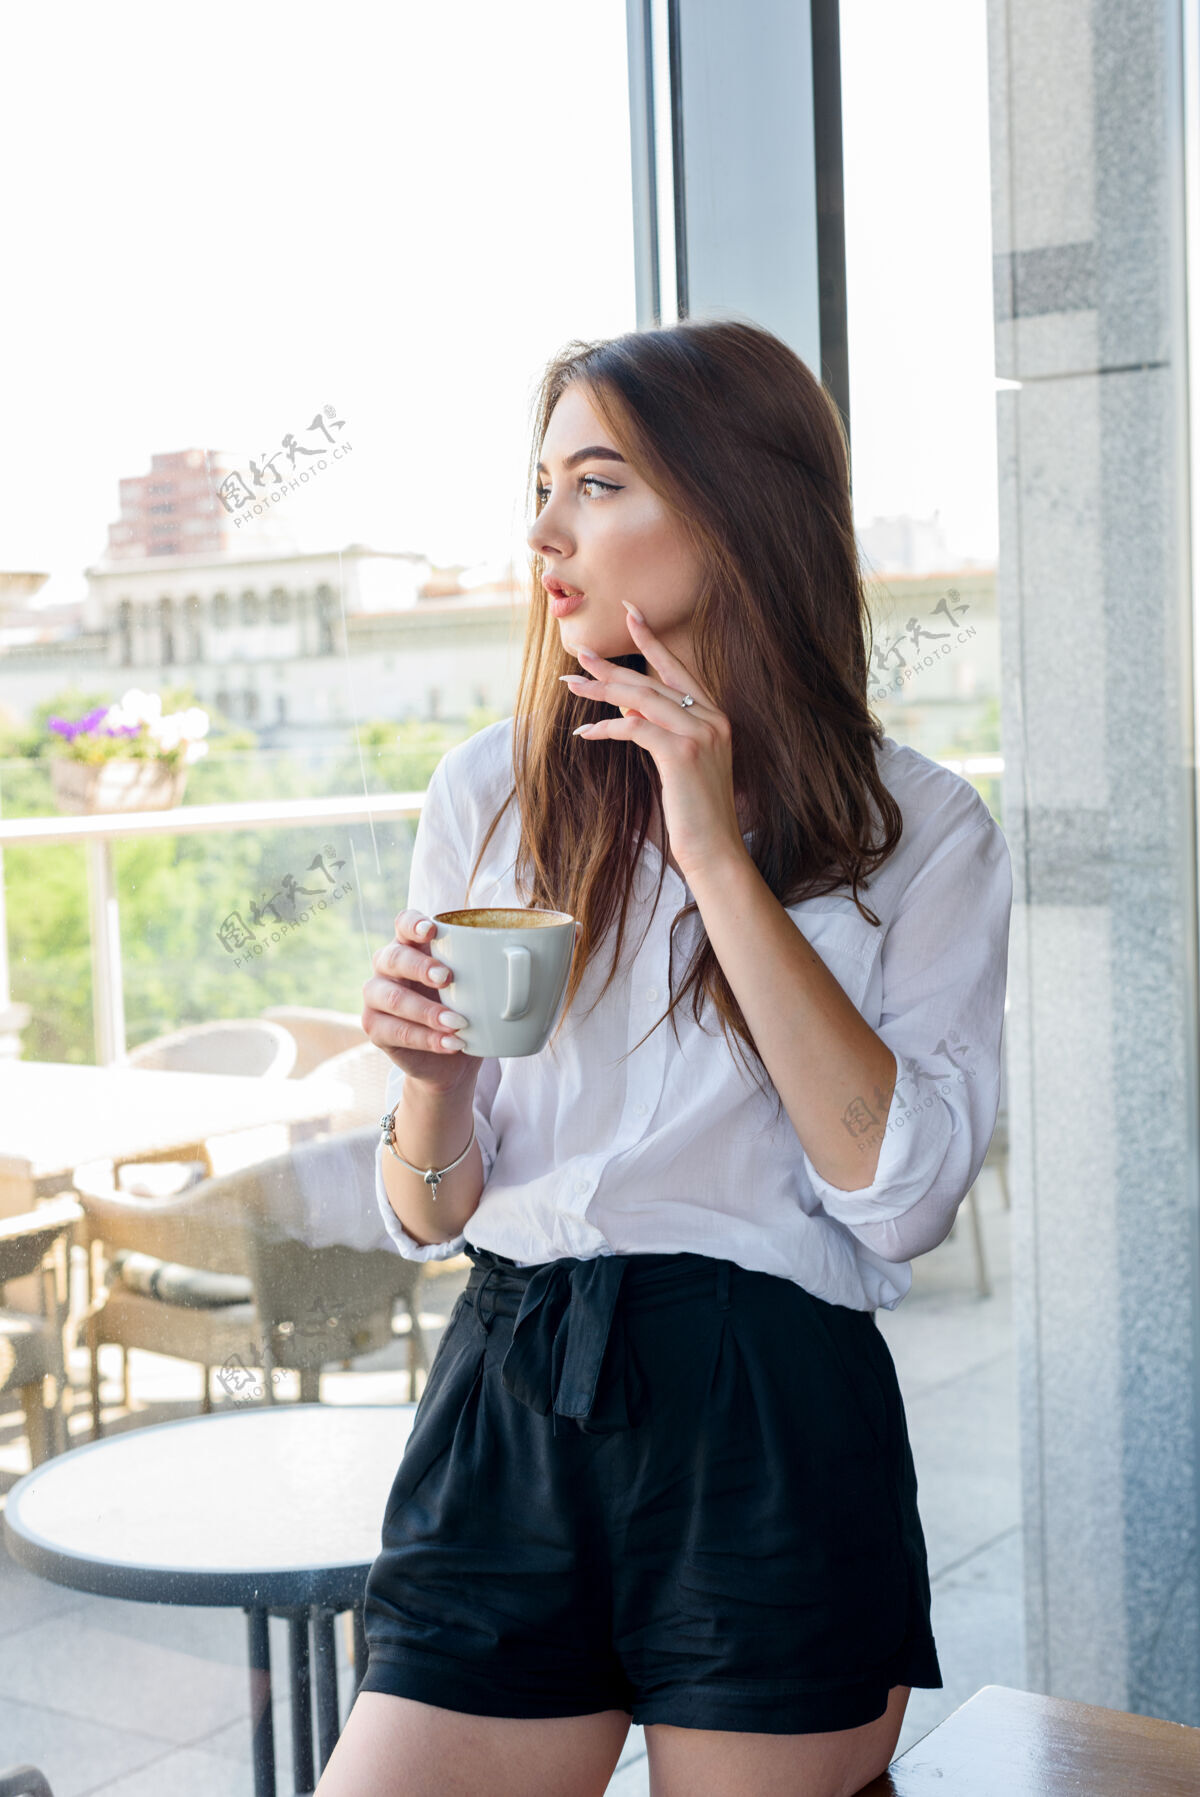 咖啡馆一个年轻漂亮的棕色头发的女孩 穿着白衬衫 在靠窗的咖啡馆里喝着卡布奇诺早餐年轻漂亮